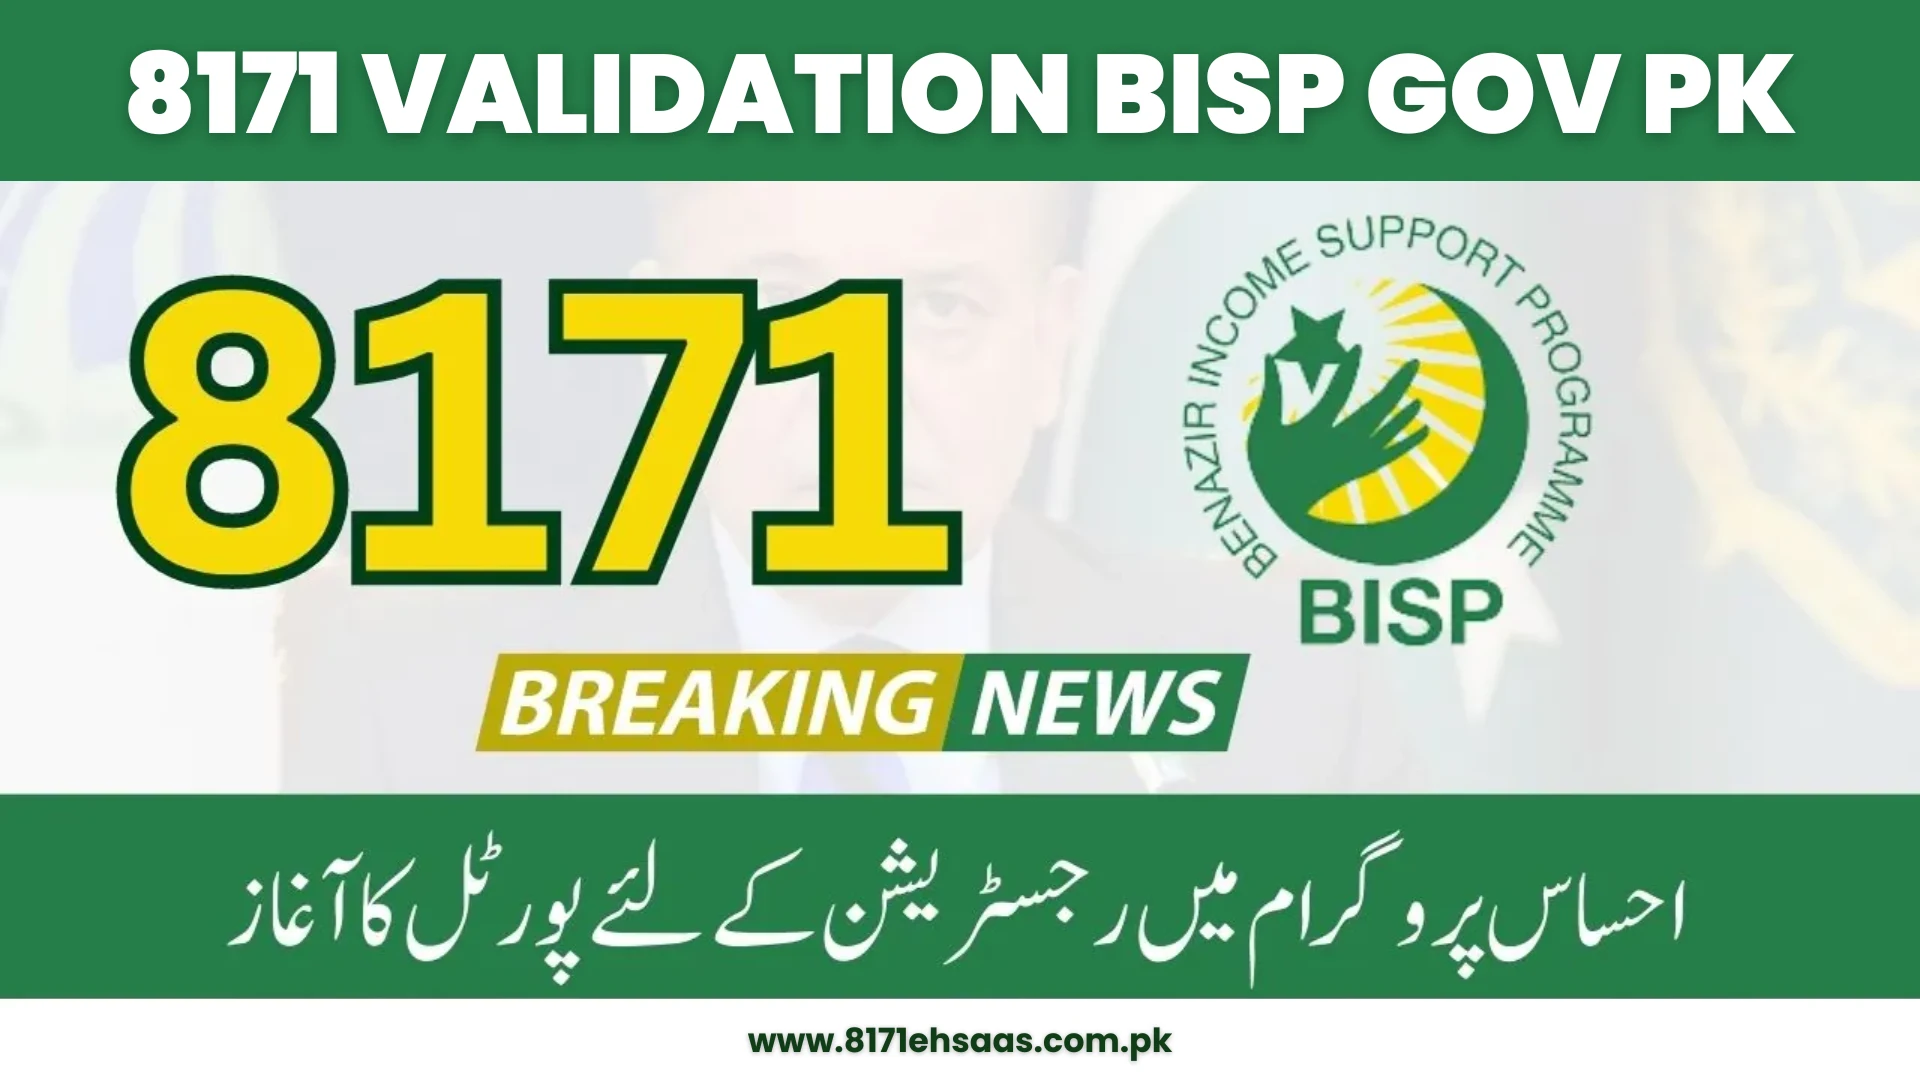 8171 validation BISP gov pk